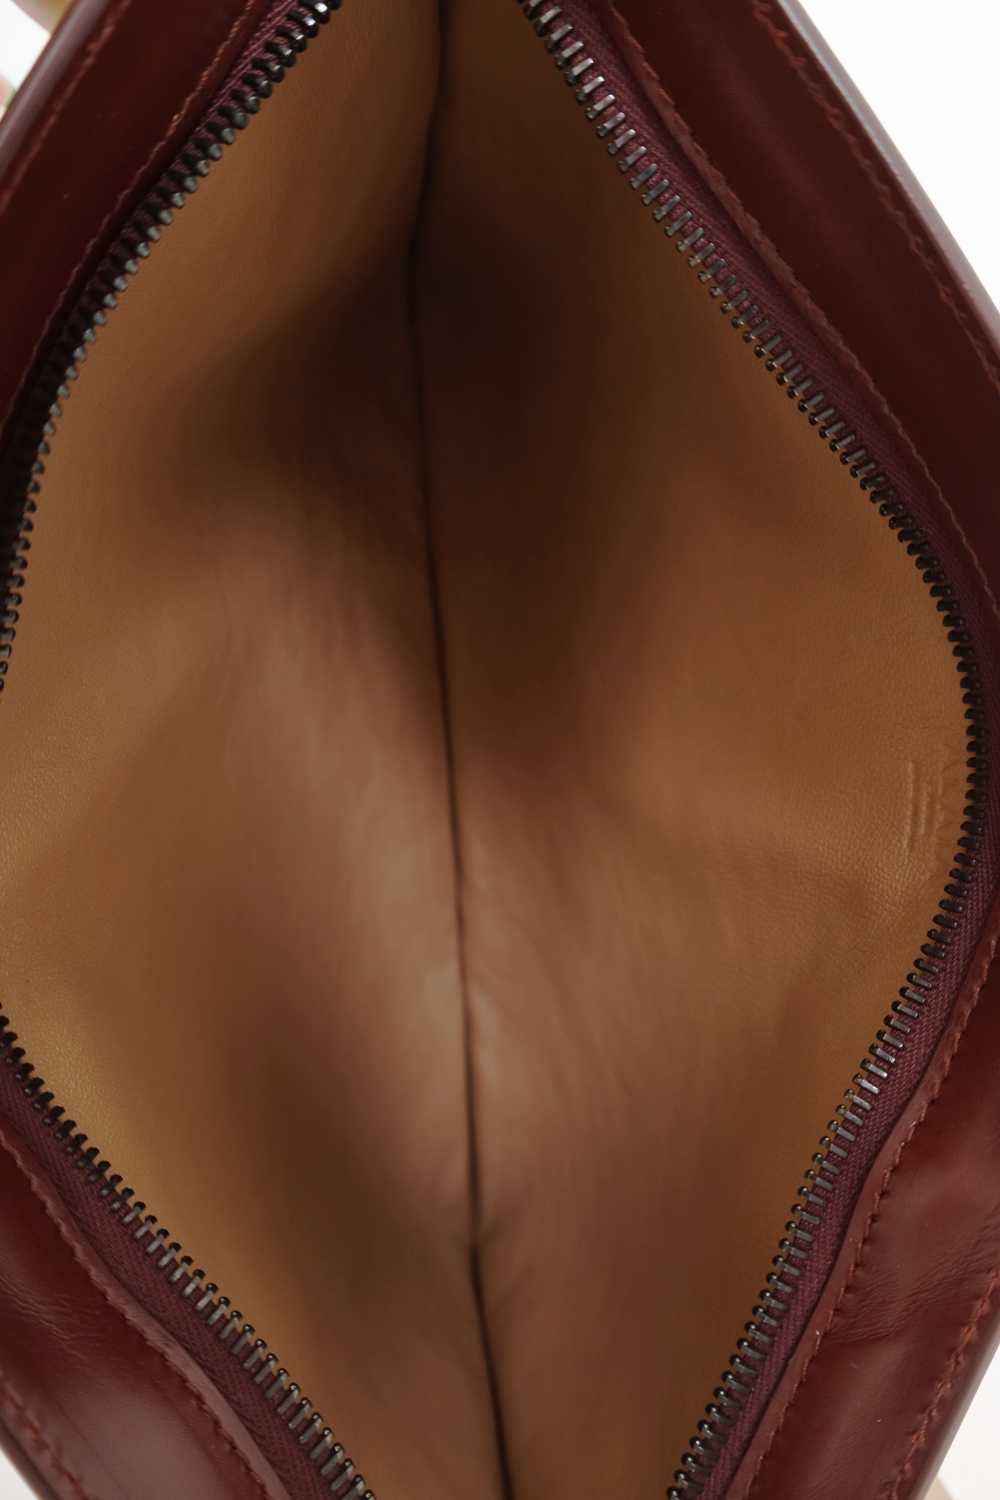 Alaïa Burgundy Leather Studded Pouch - image 6